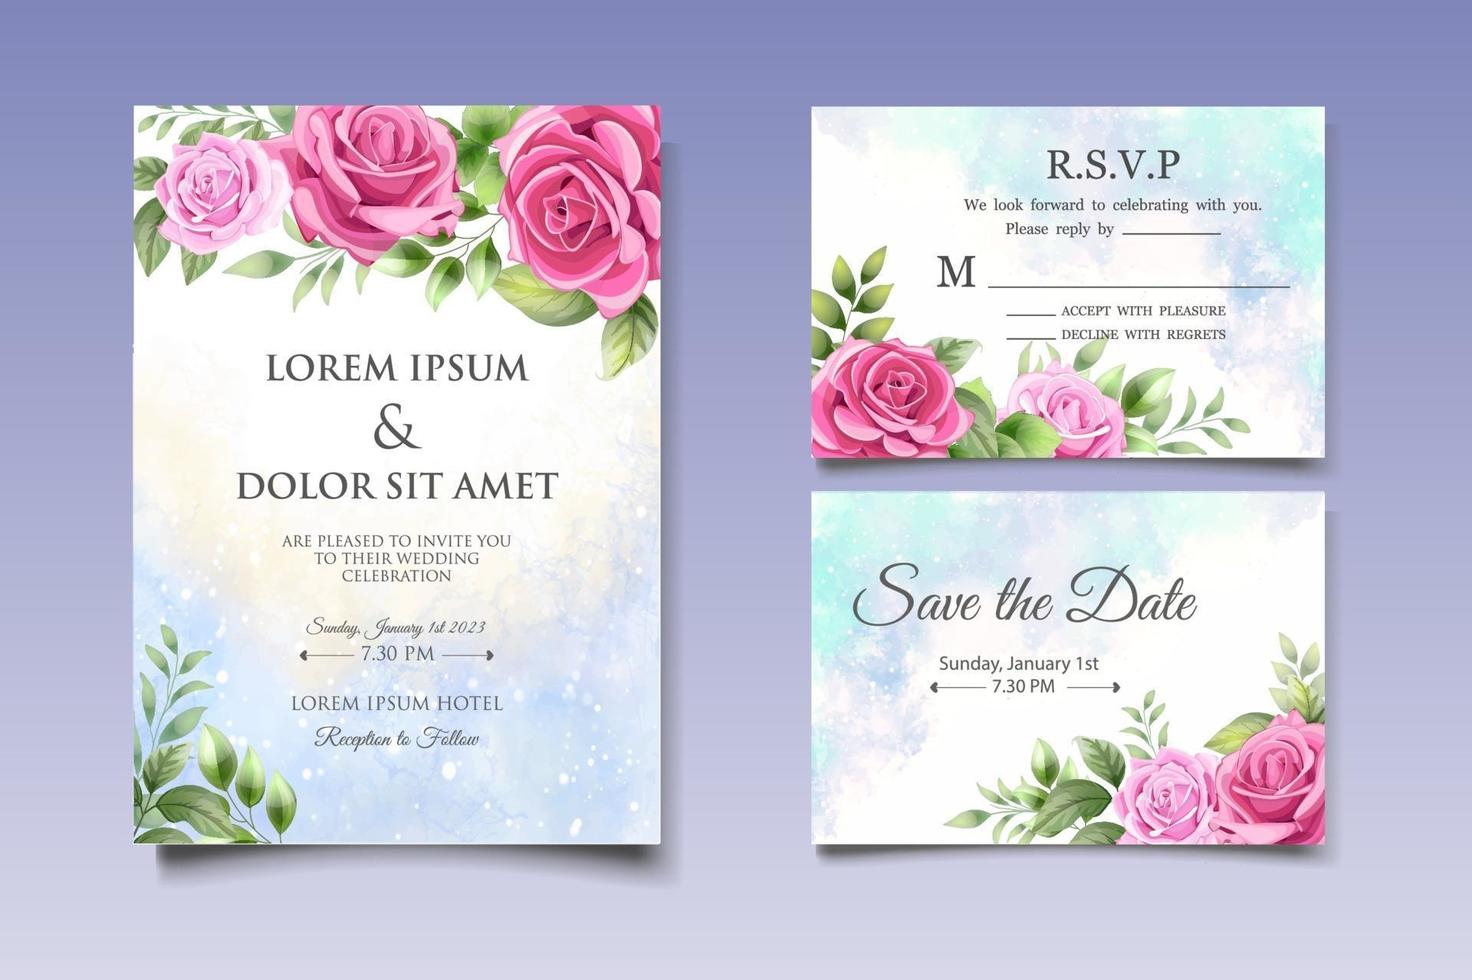 carte d'invitation de mariage avec de belles fleurs et feuilles vecteur